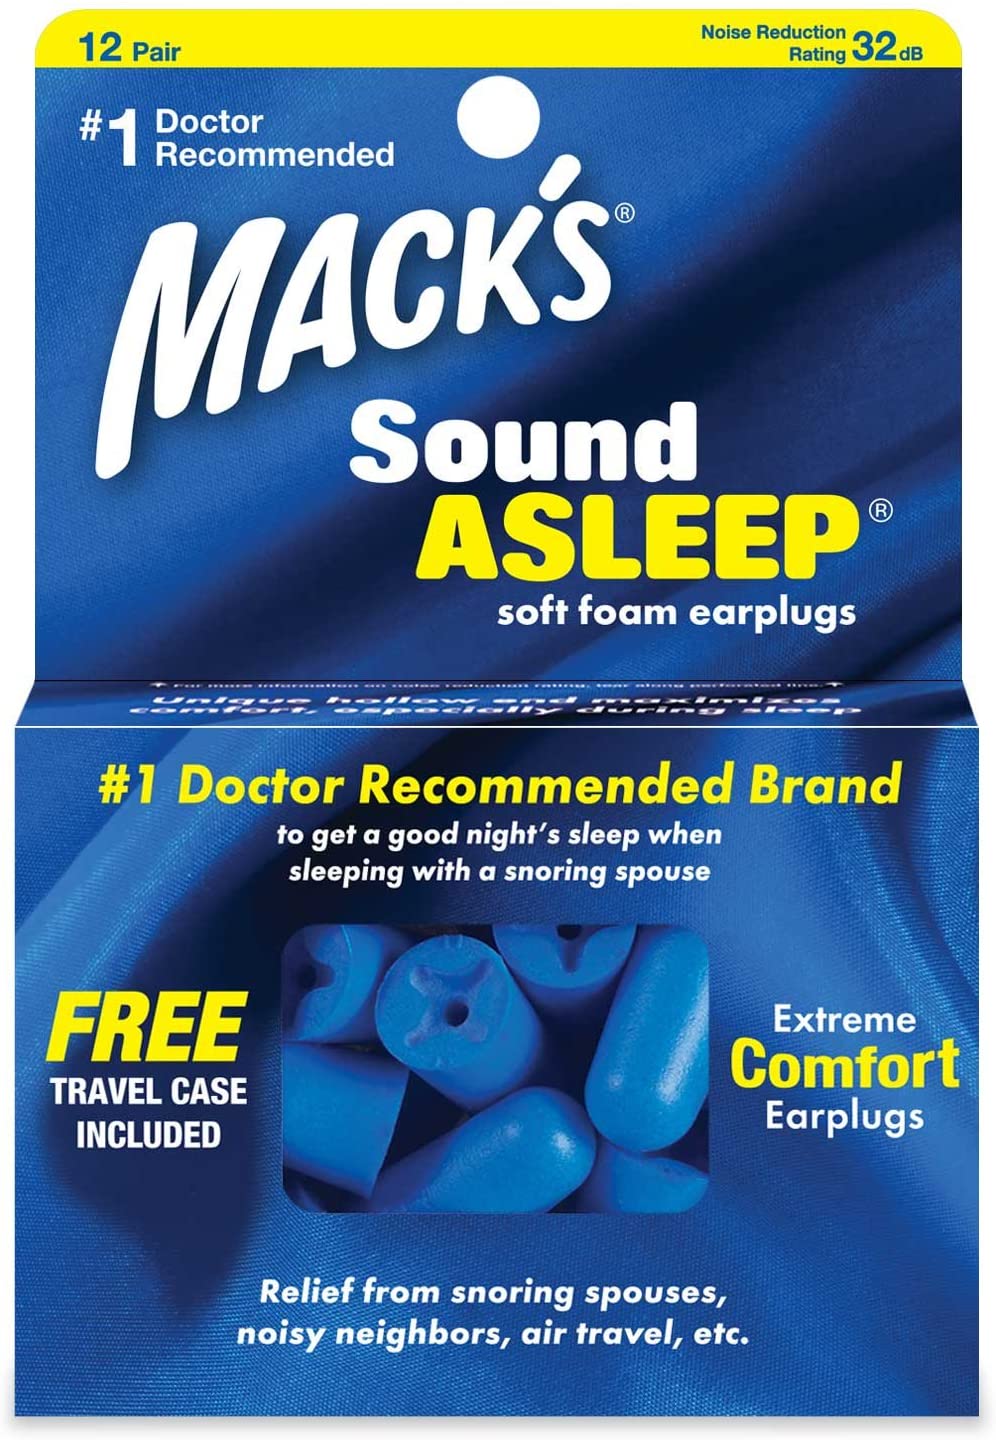 Macks Sound Asleep earplugs.